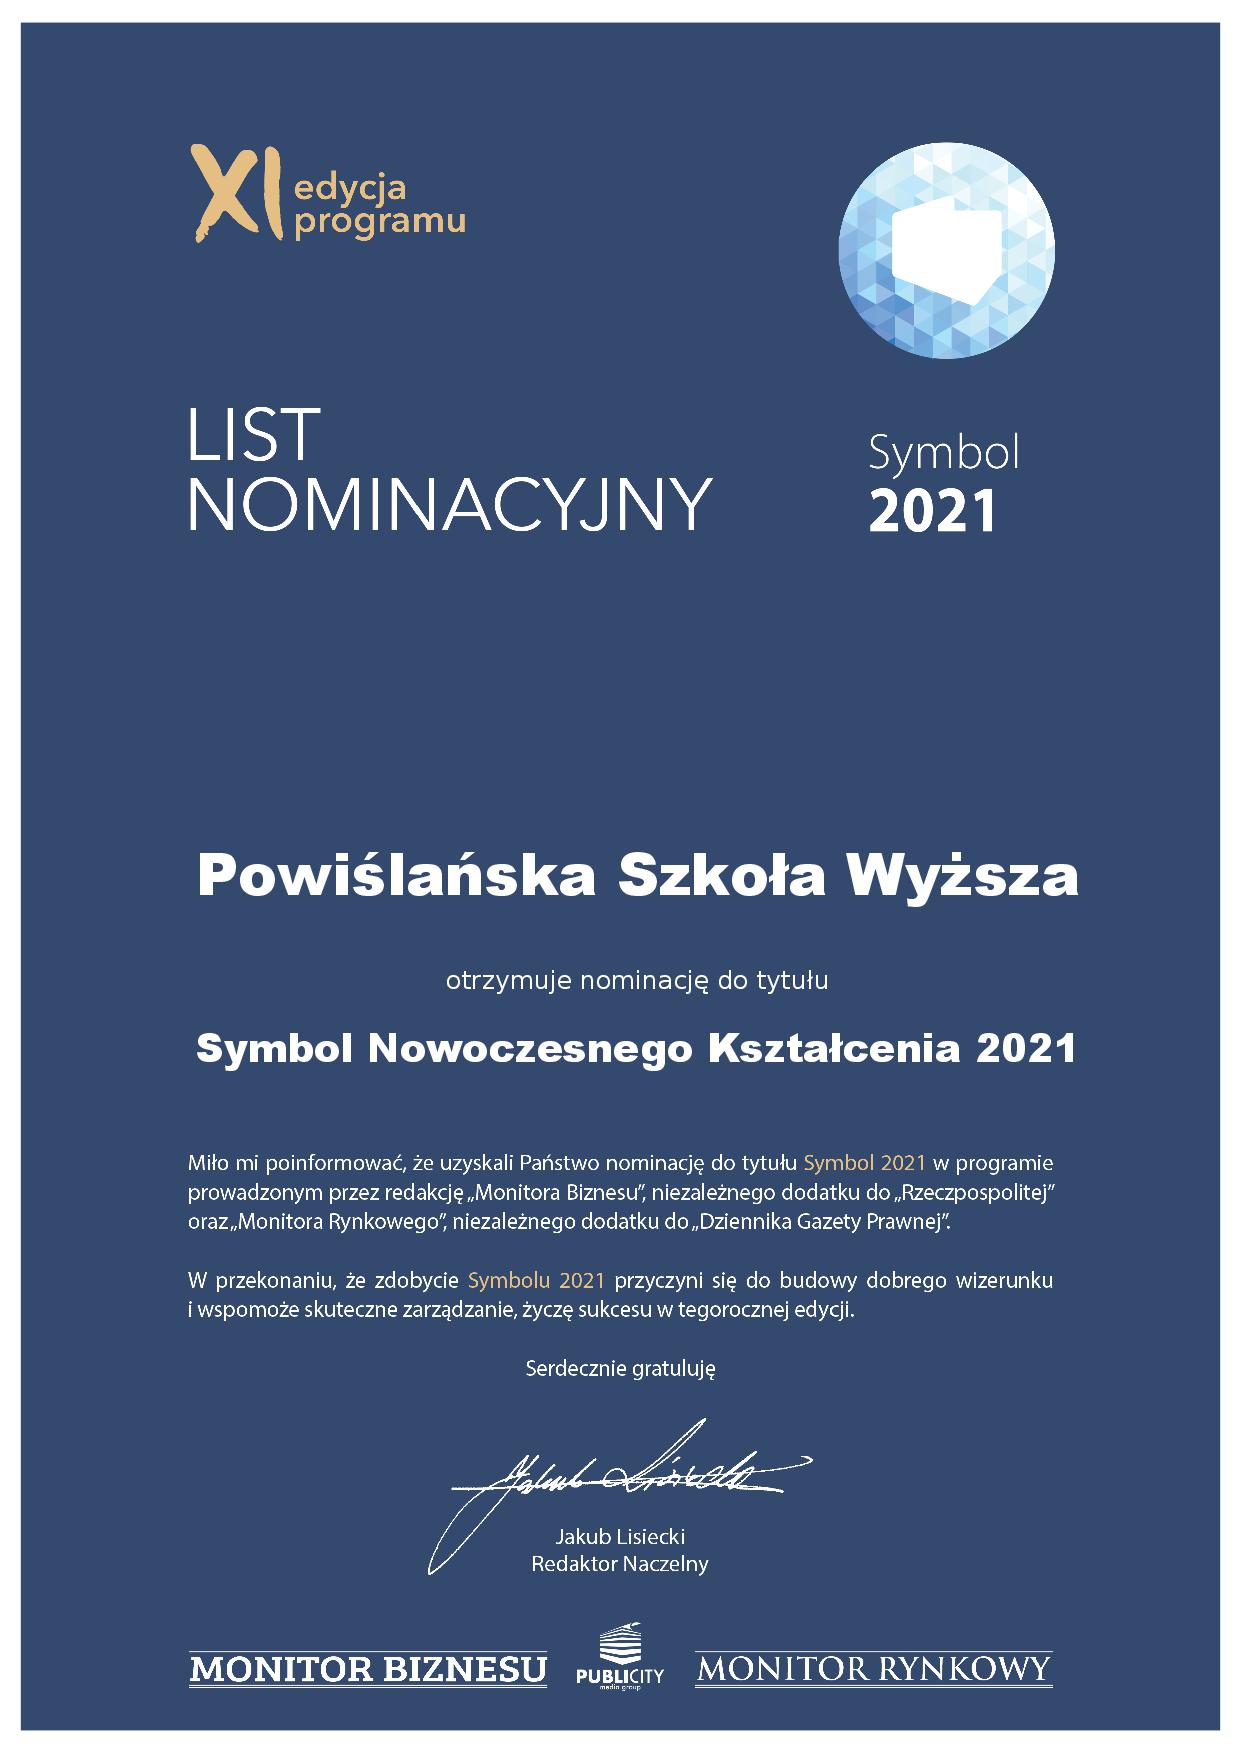 List nominacyjny - Powiślańska Szkoła Wyższa (1)